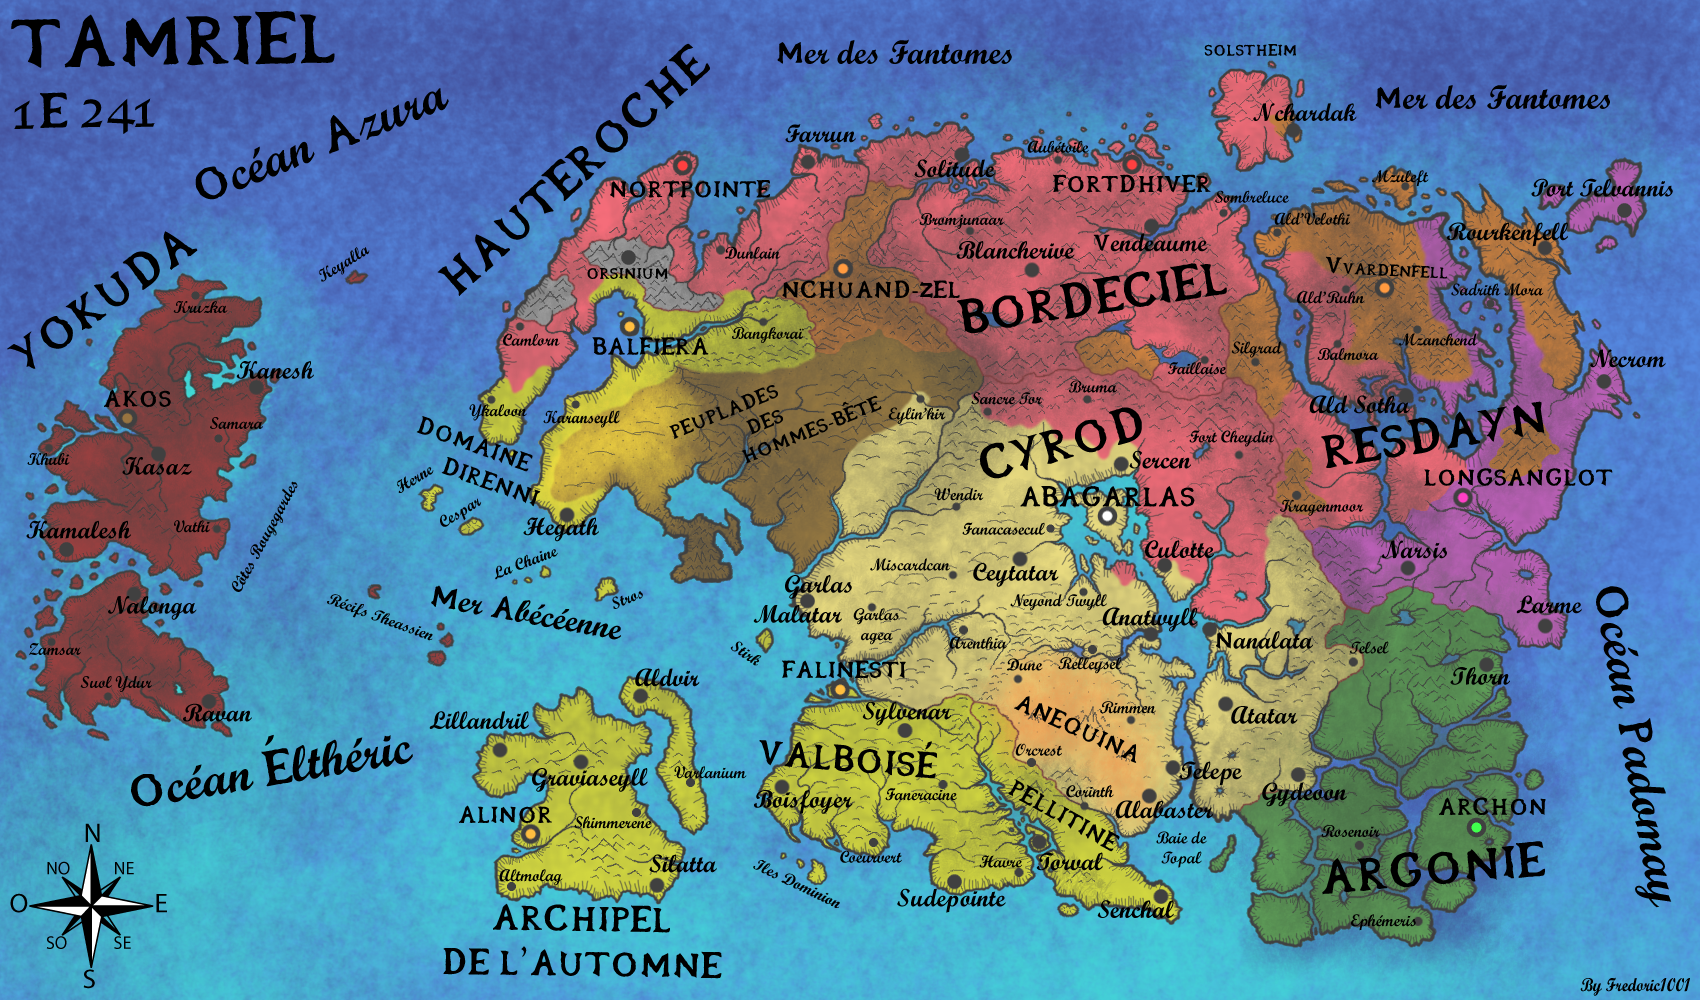 Cartographie Carte_geopolitique_de_tamriel_en_1e241_by_fredoric1001-d722bvk